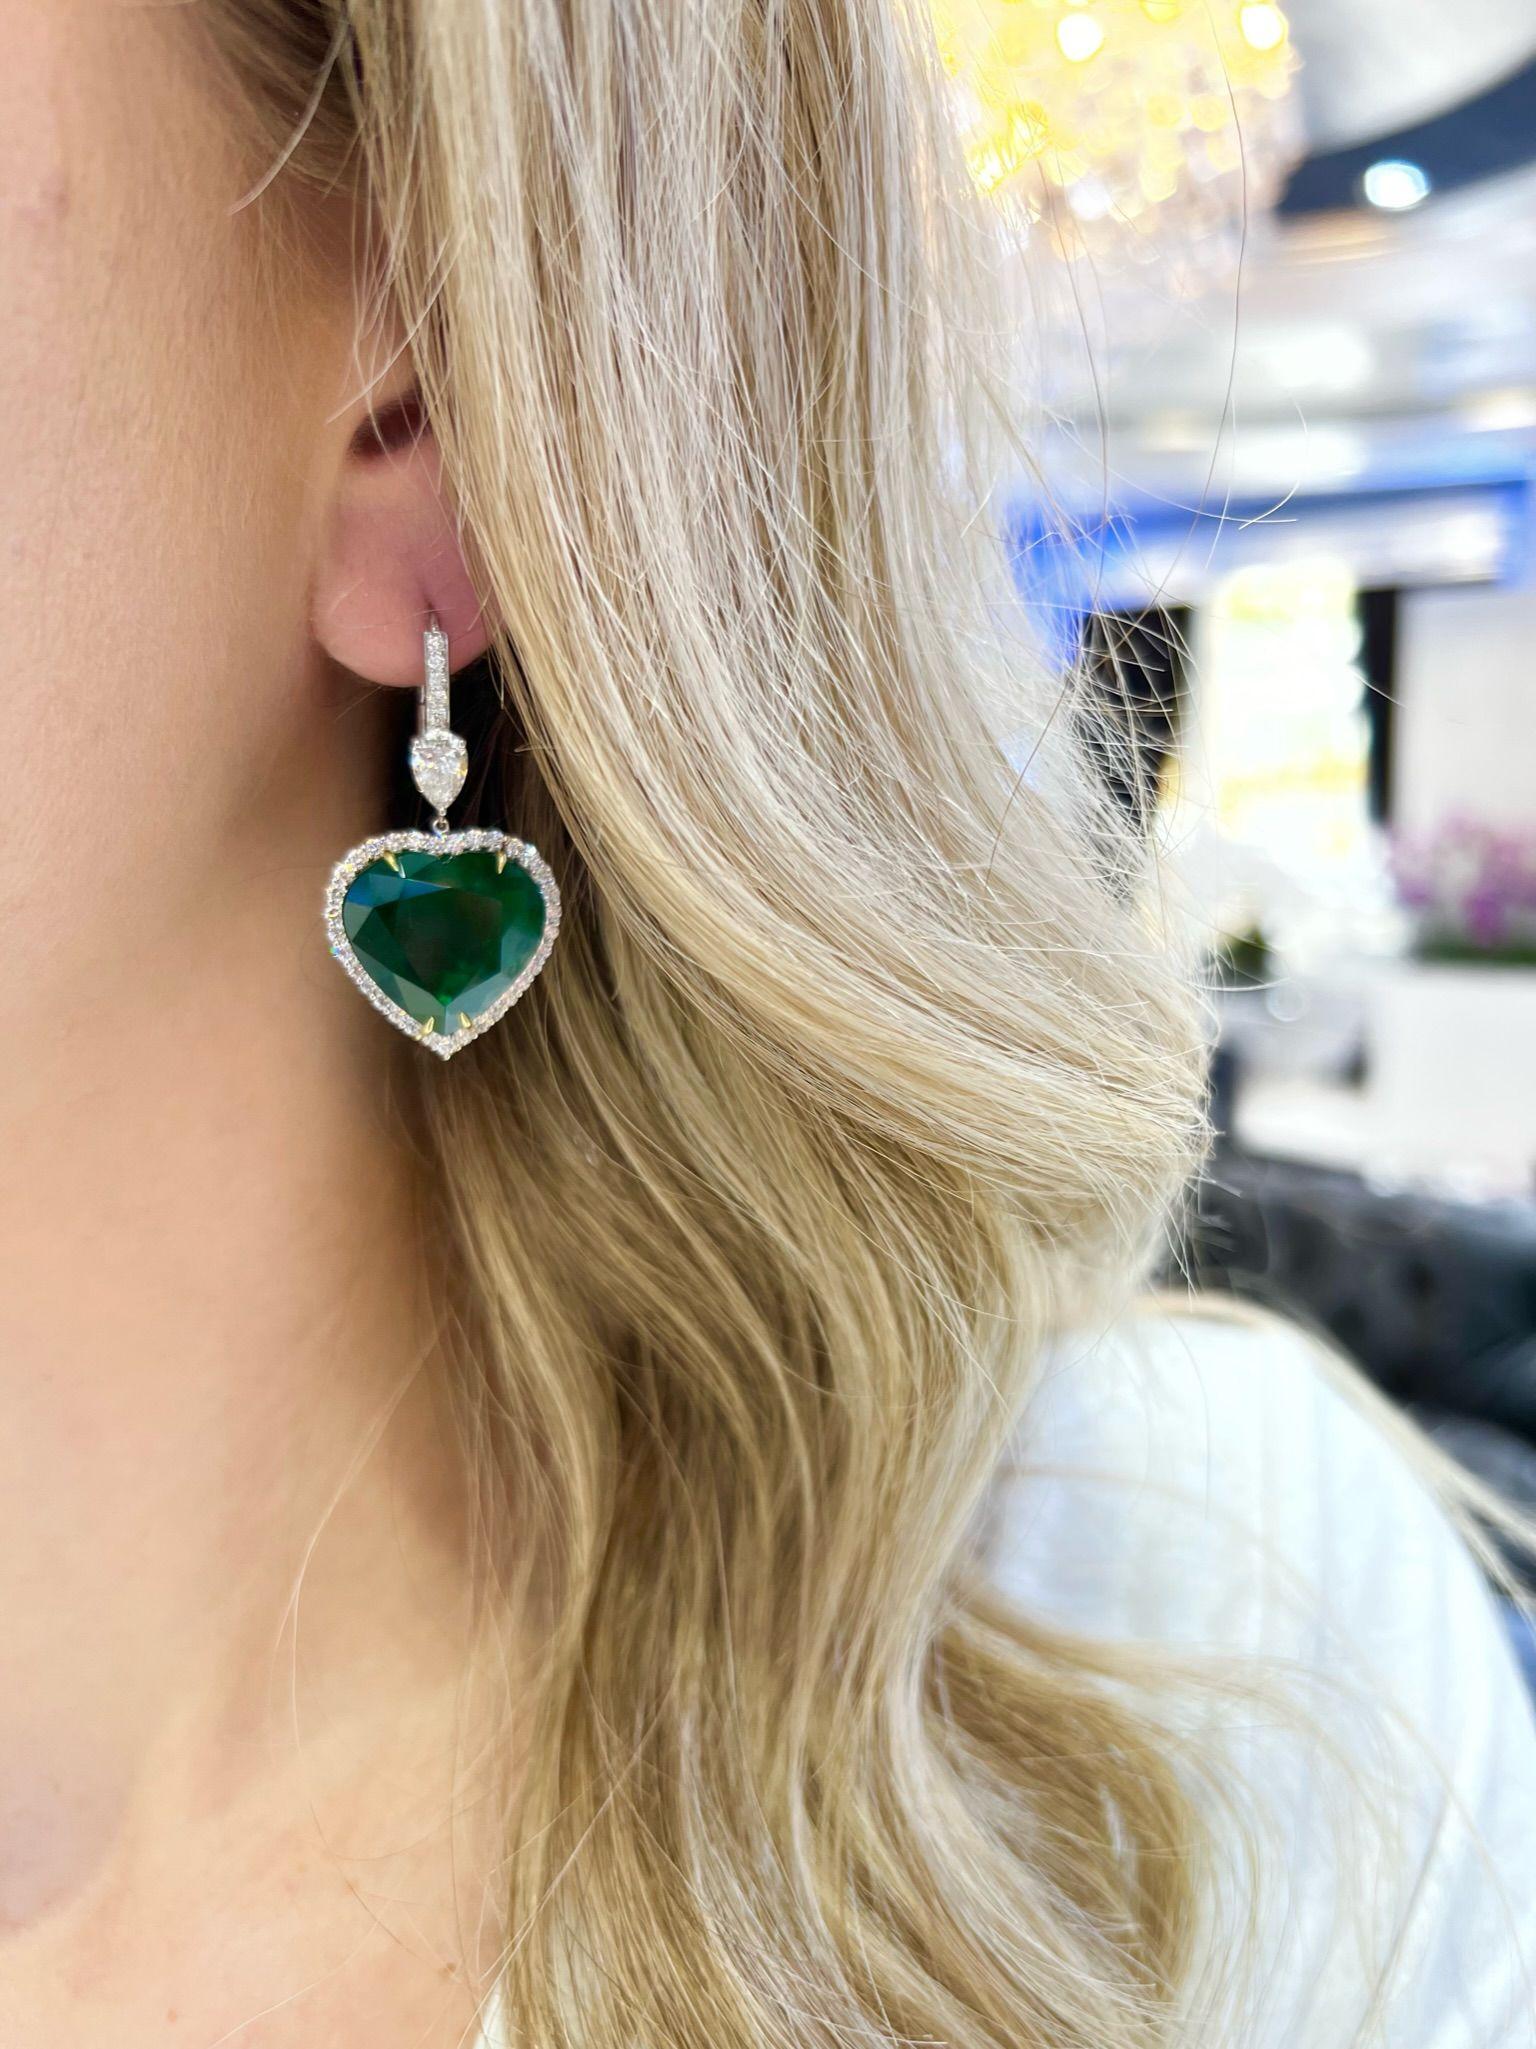 David Rosenberg 30.36 Carat Heart Shape Green Zambian Emerald Diamond Earrings For Sale 2